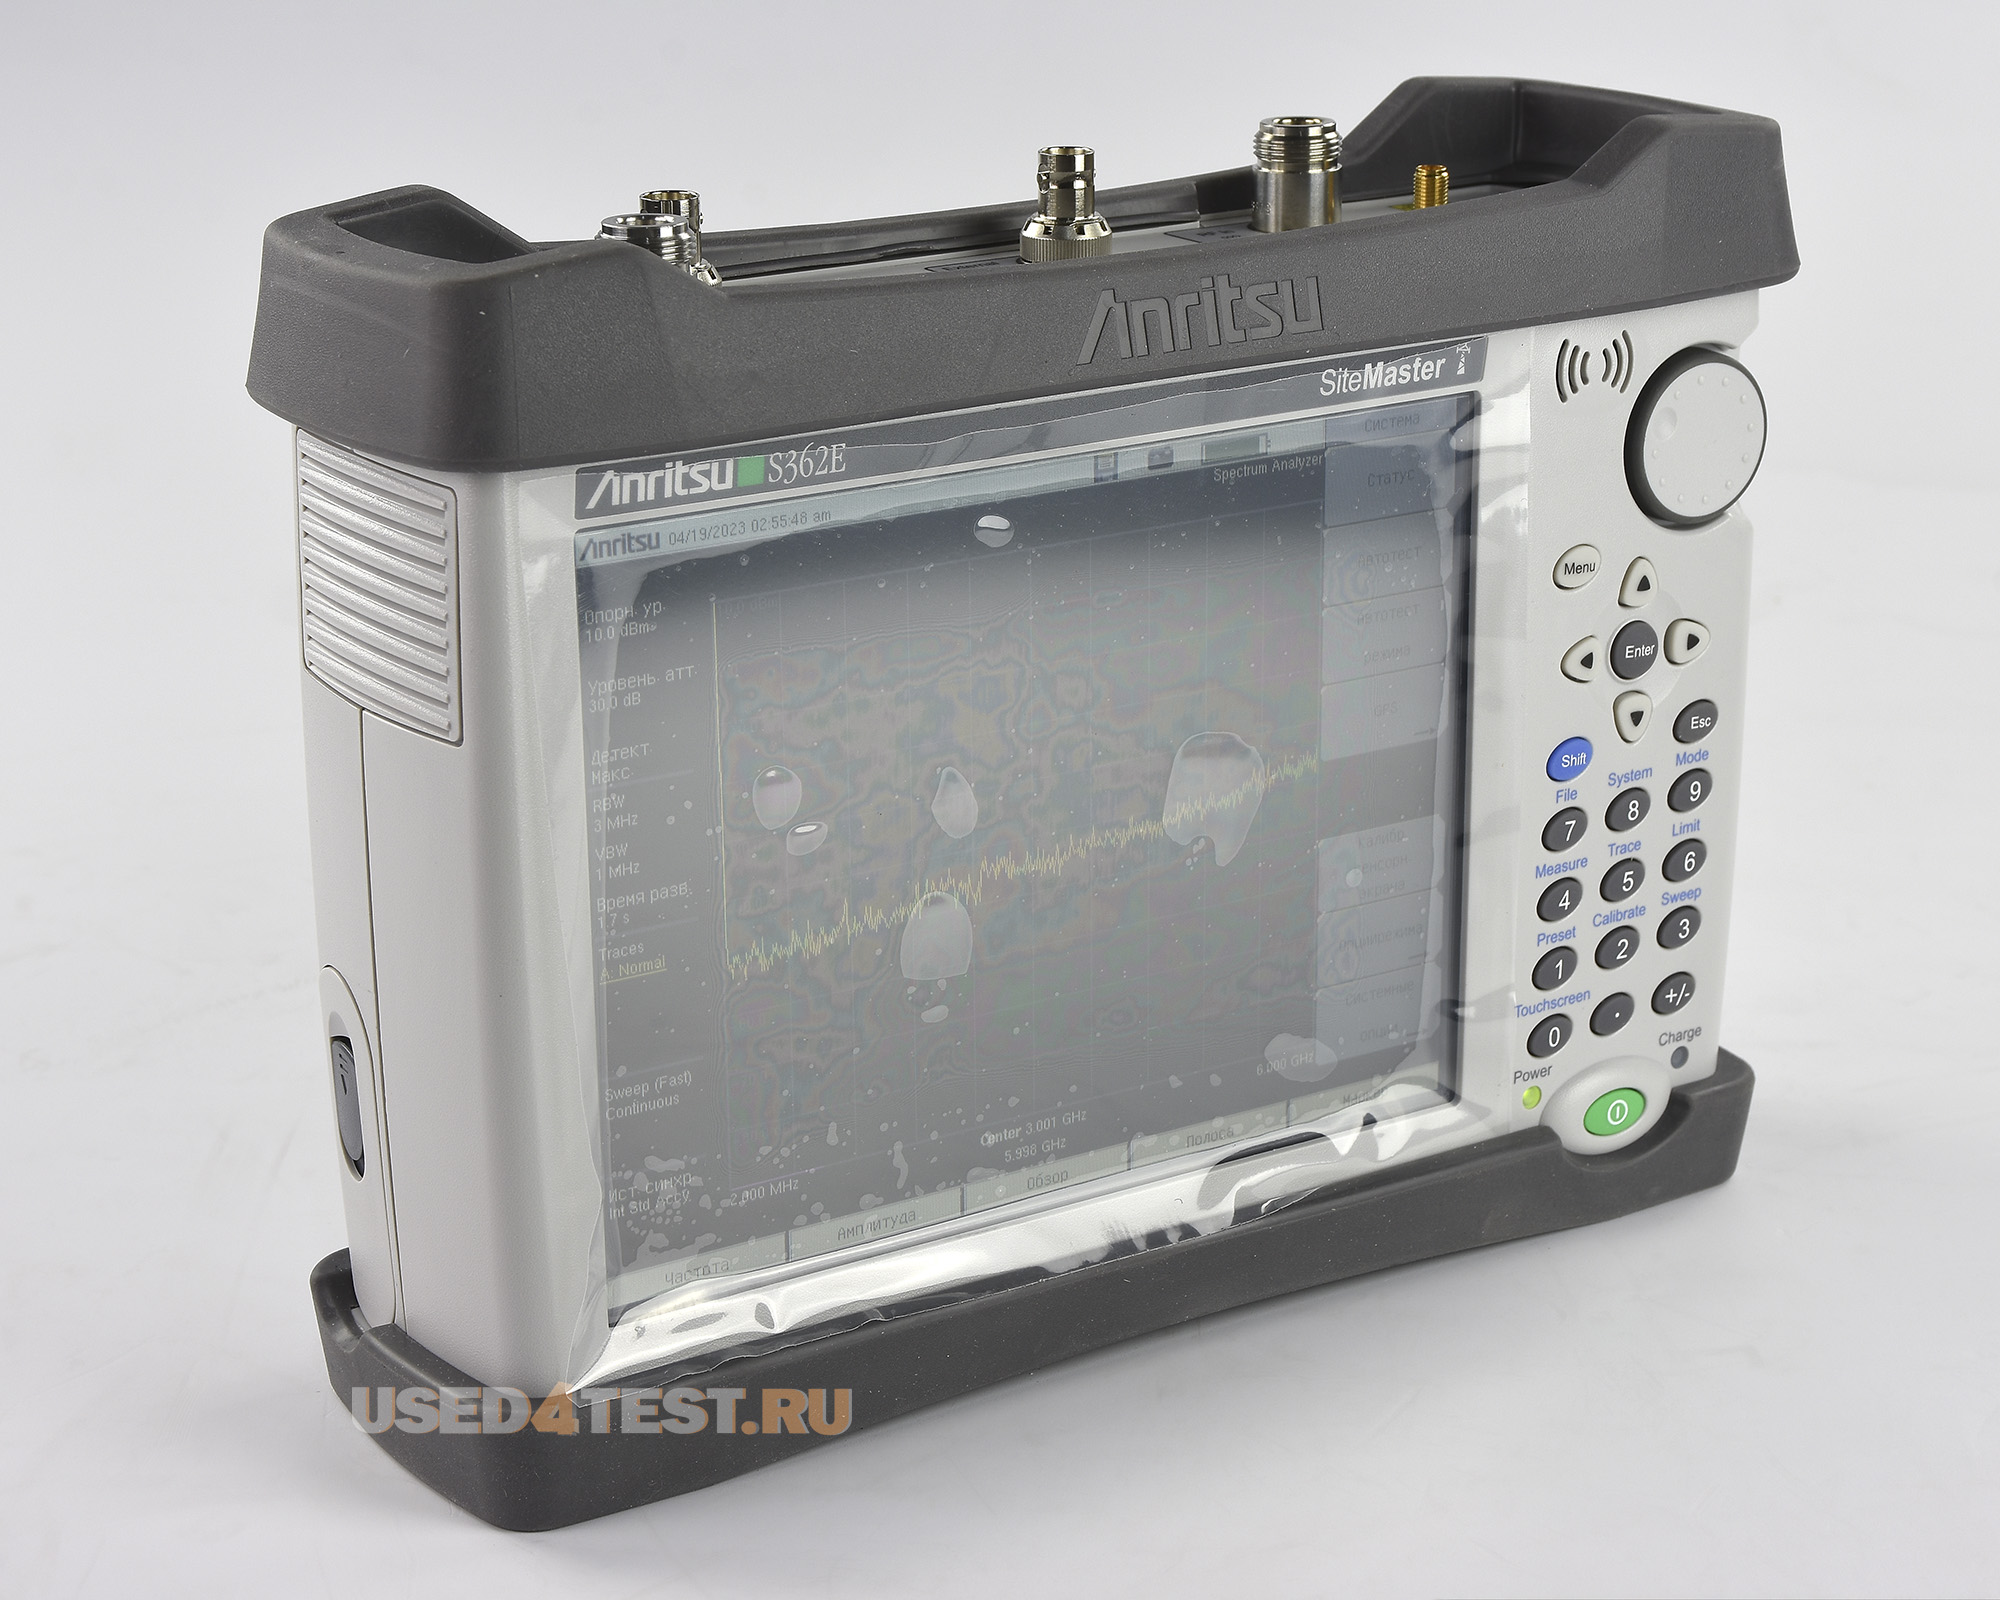 Анализатор АФУ Site Master, анализатор спектра
 Anritsu S362E
 Анализатор спектра: 9 кГц — 6 ГГц
 
Анализатор АФУ: 2 МГц — 6 ГГц
 
